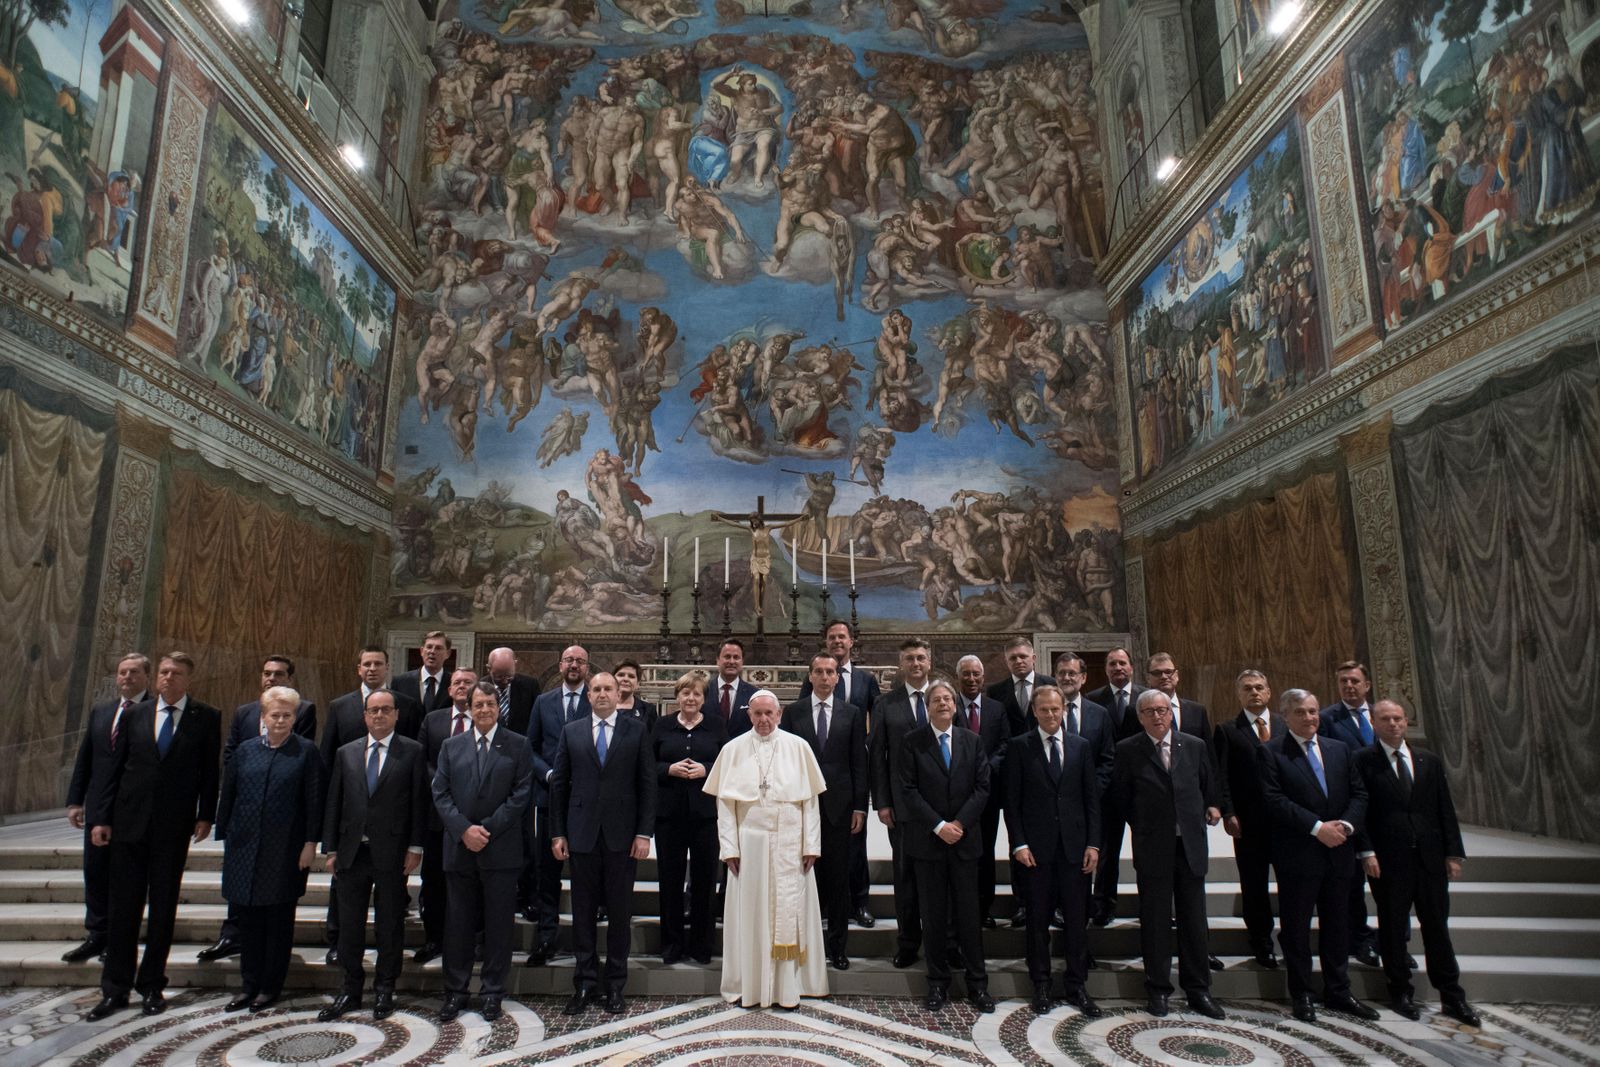 Discurso completo del papa Francisco a los líderes de la Unión Europea